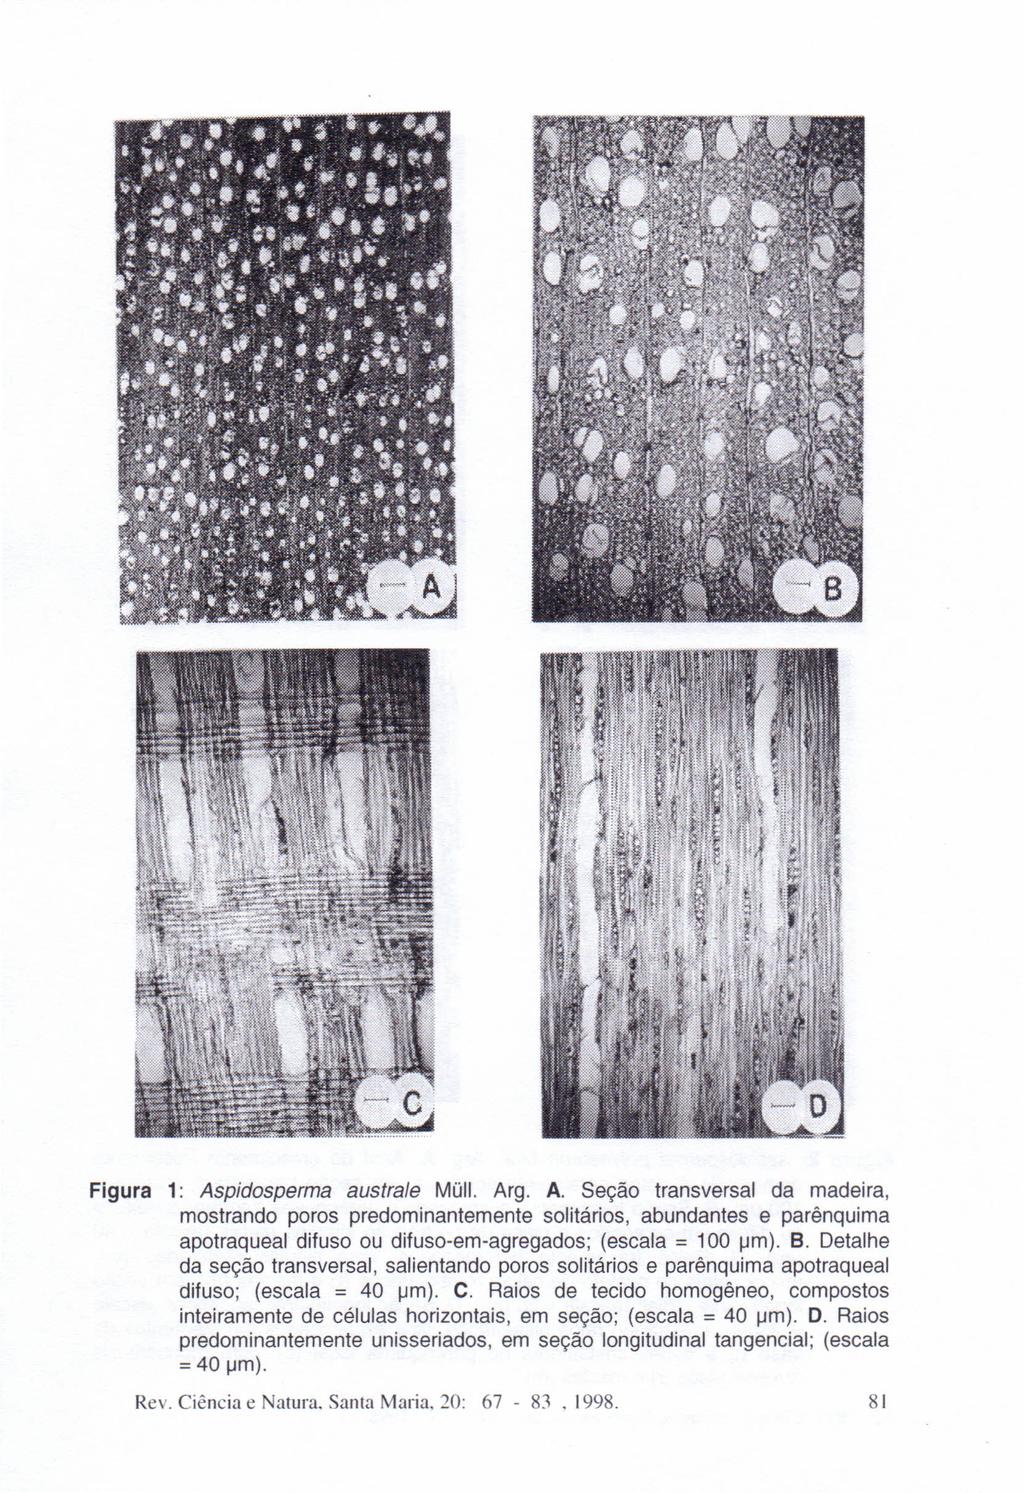 Figura 1: Aspidosperma australe Müll. Arg. A. Seção transversal da madeira, mostrando poros predominantemente solitários, abundantes e parênquima apotraqueal difuso ou difuso-em-agregados; (escala = 100 um).